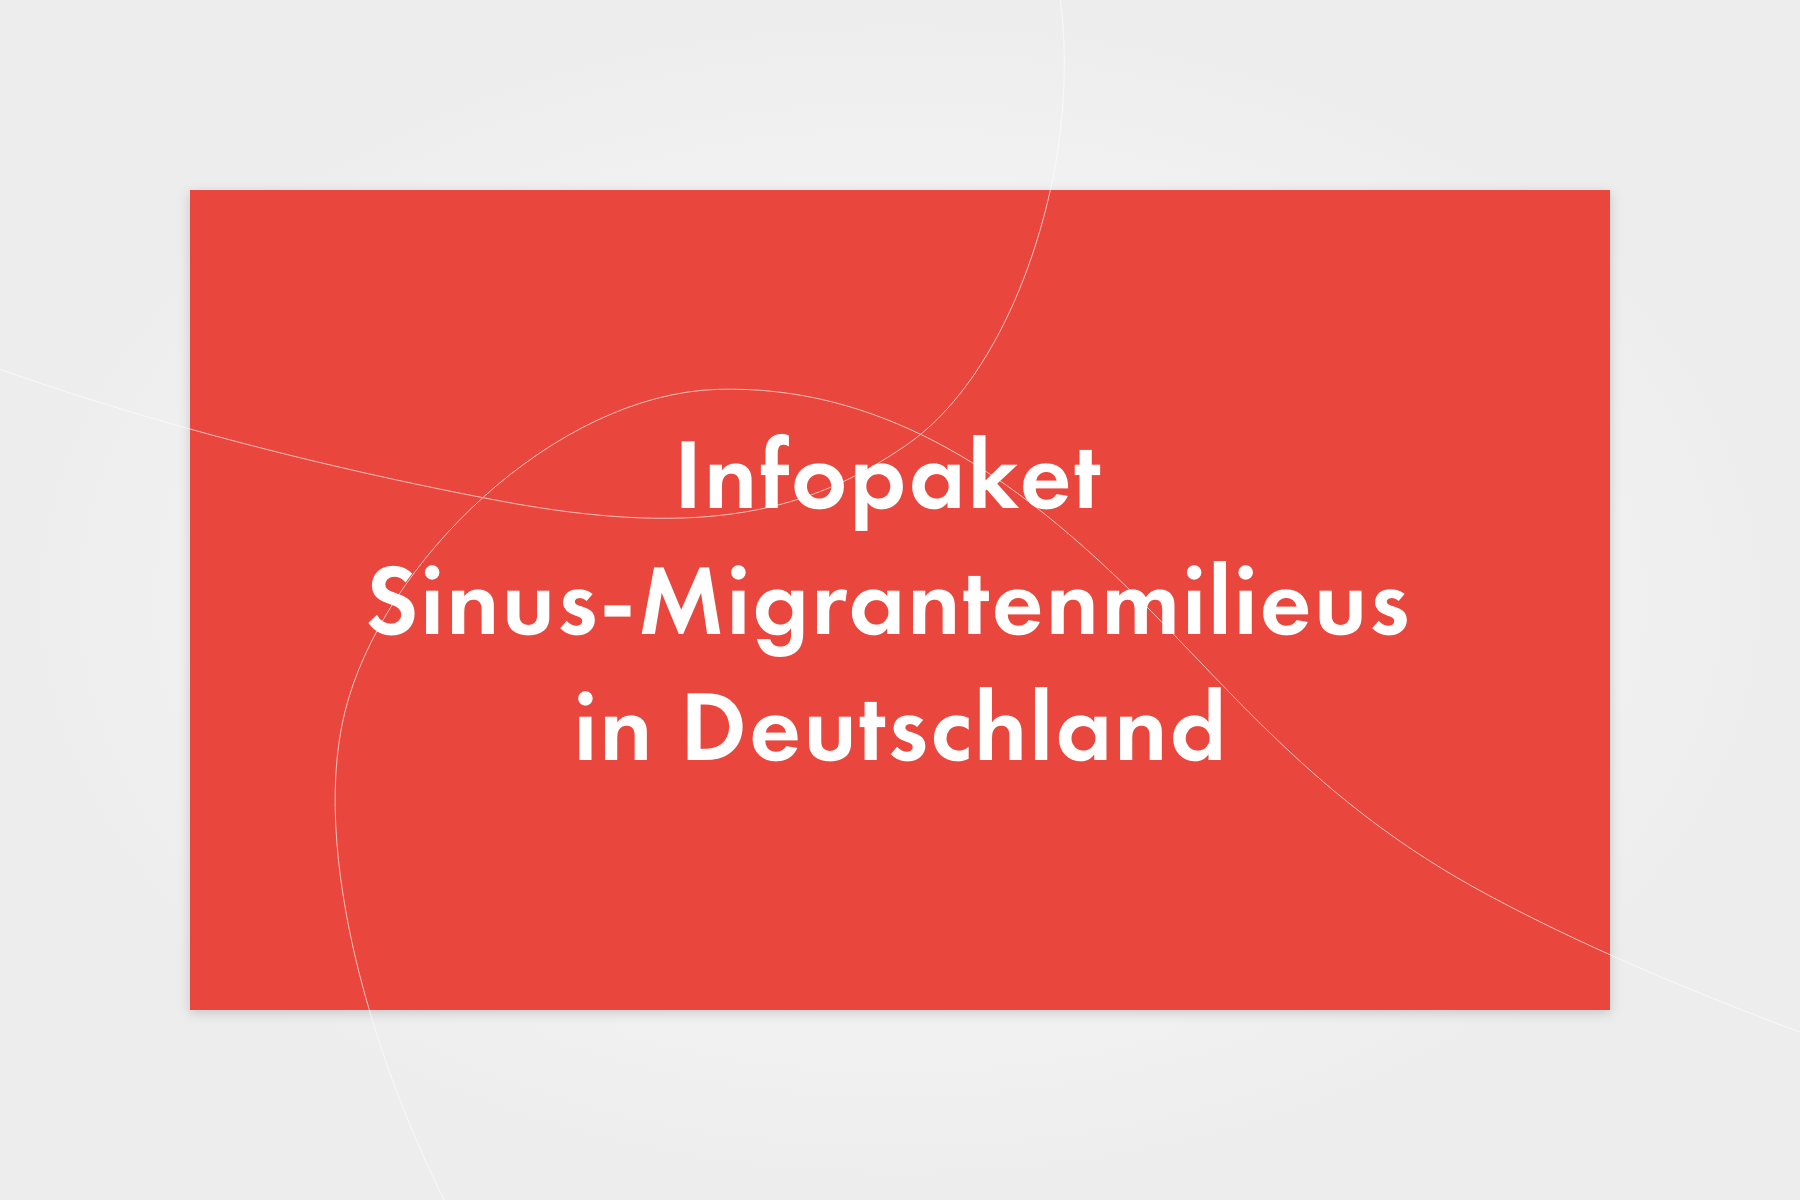 Infopaket „Sinus-Migrantenmilieus in Deutschland“